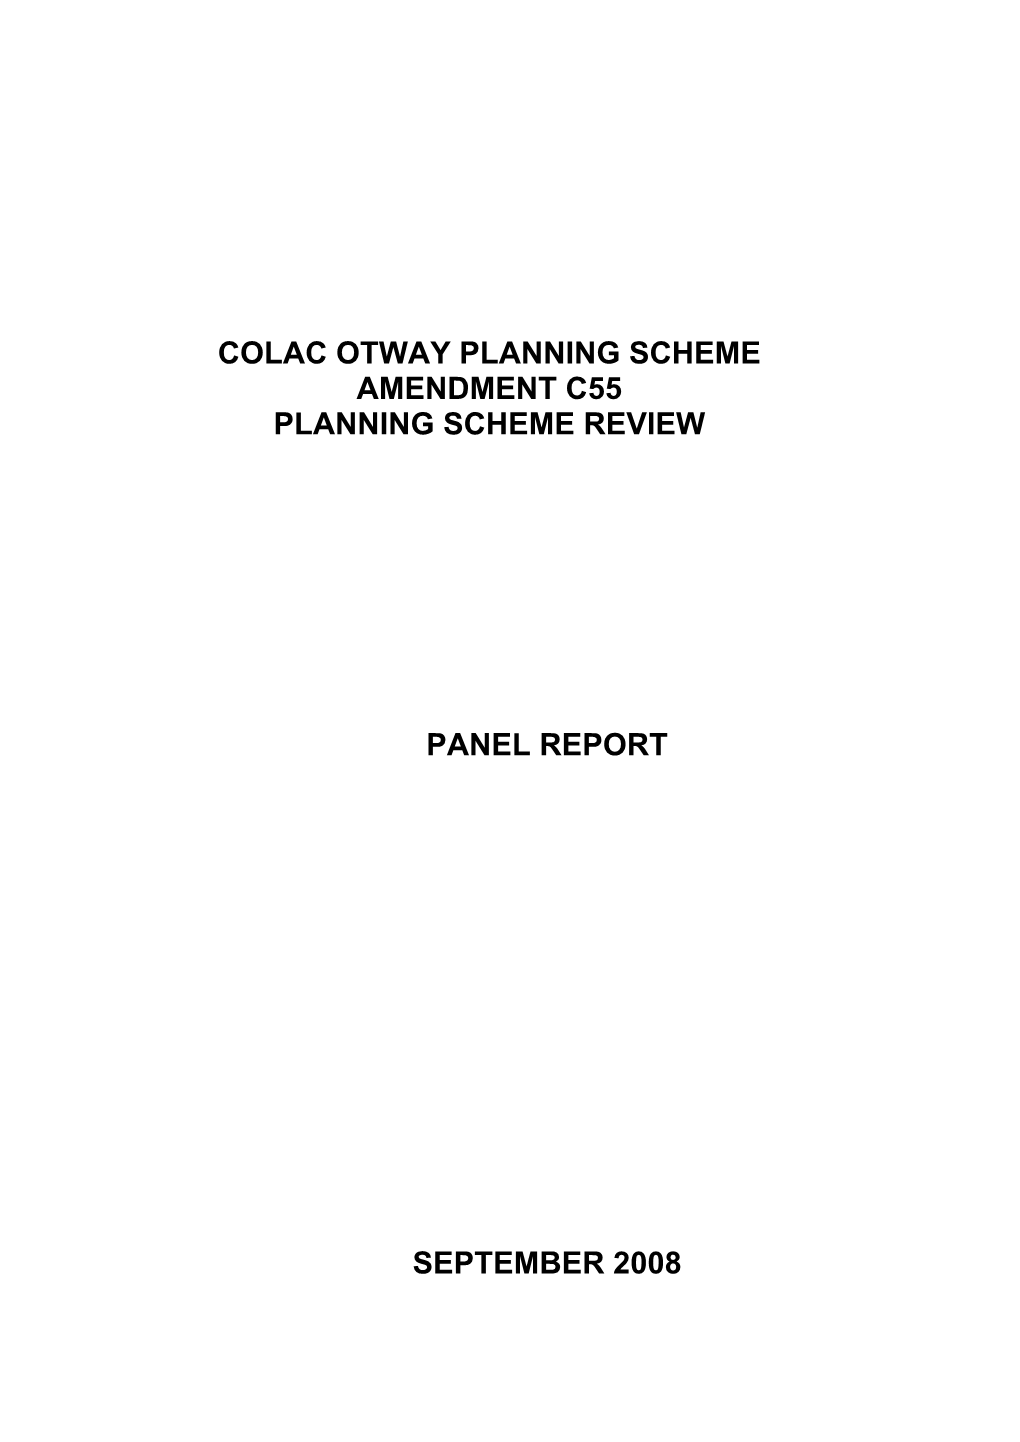 Colac Otway Planning Scheme Amendment C55 Planning Scheme Review